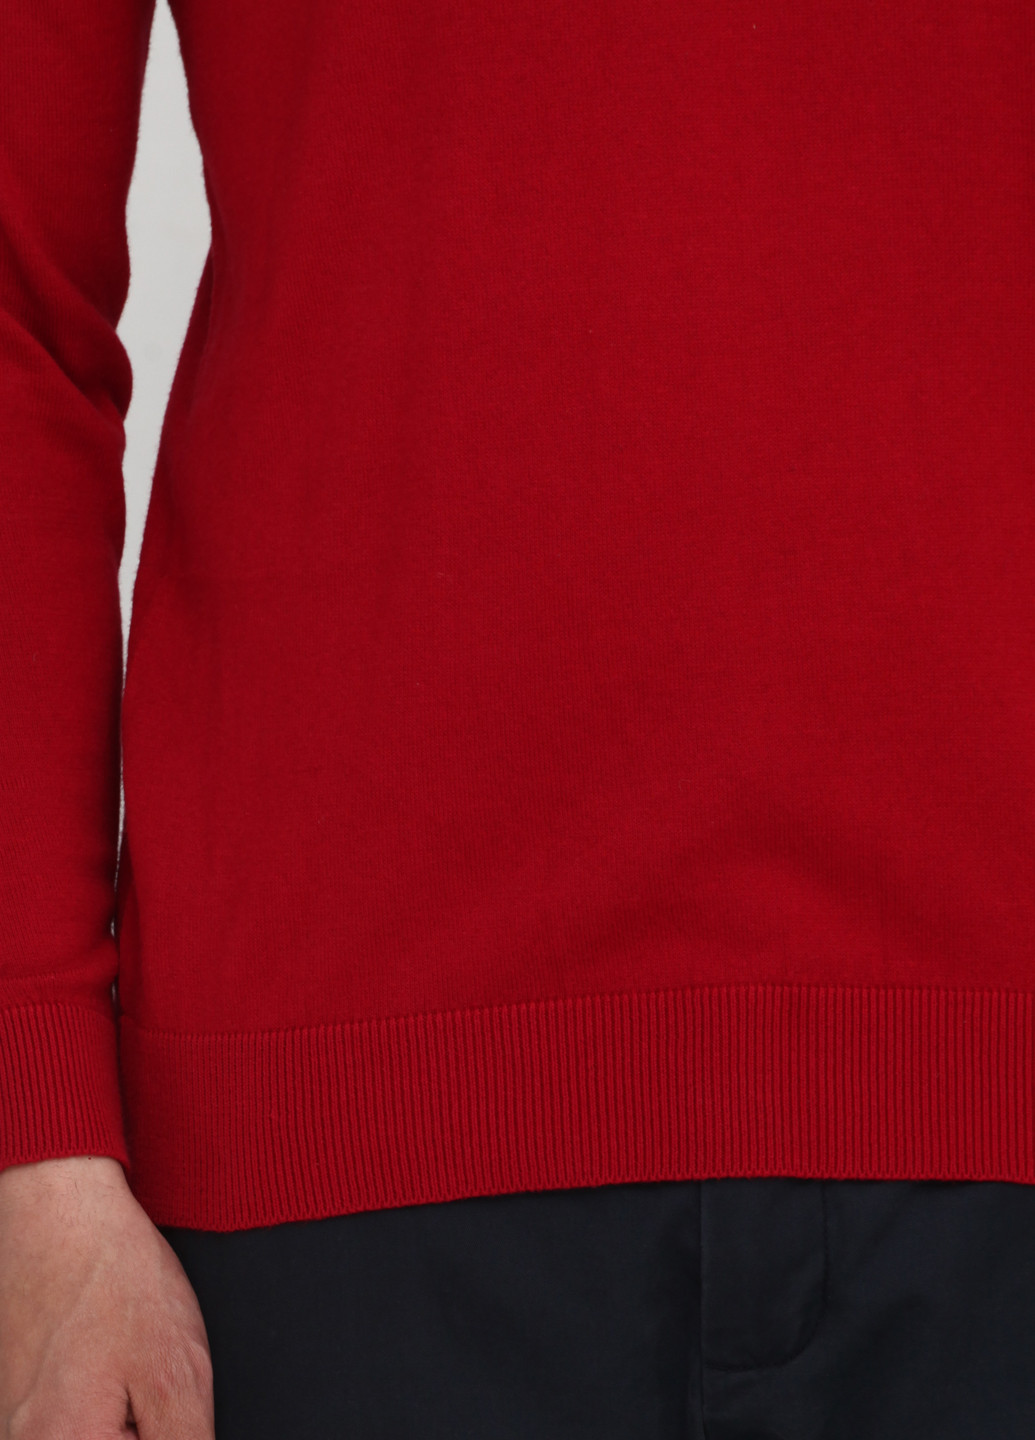 Червоний демісезонний пуловер пуловер Norsons